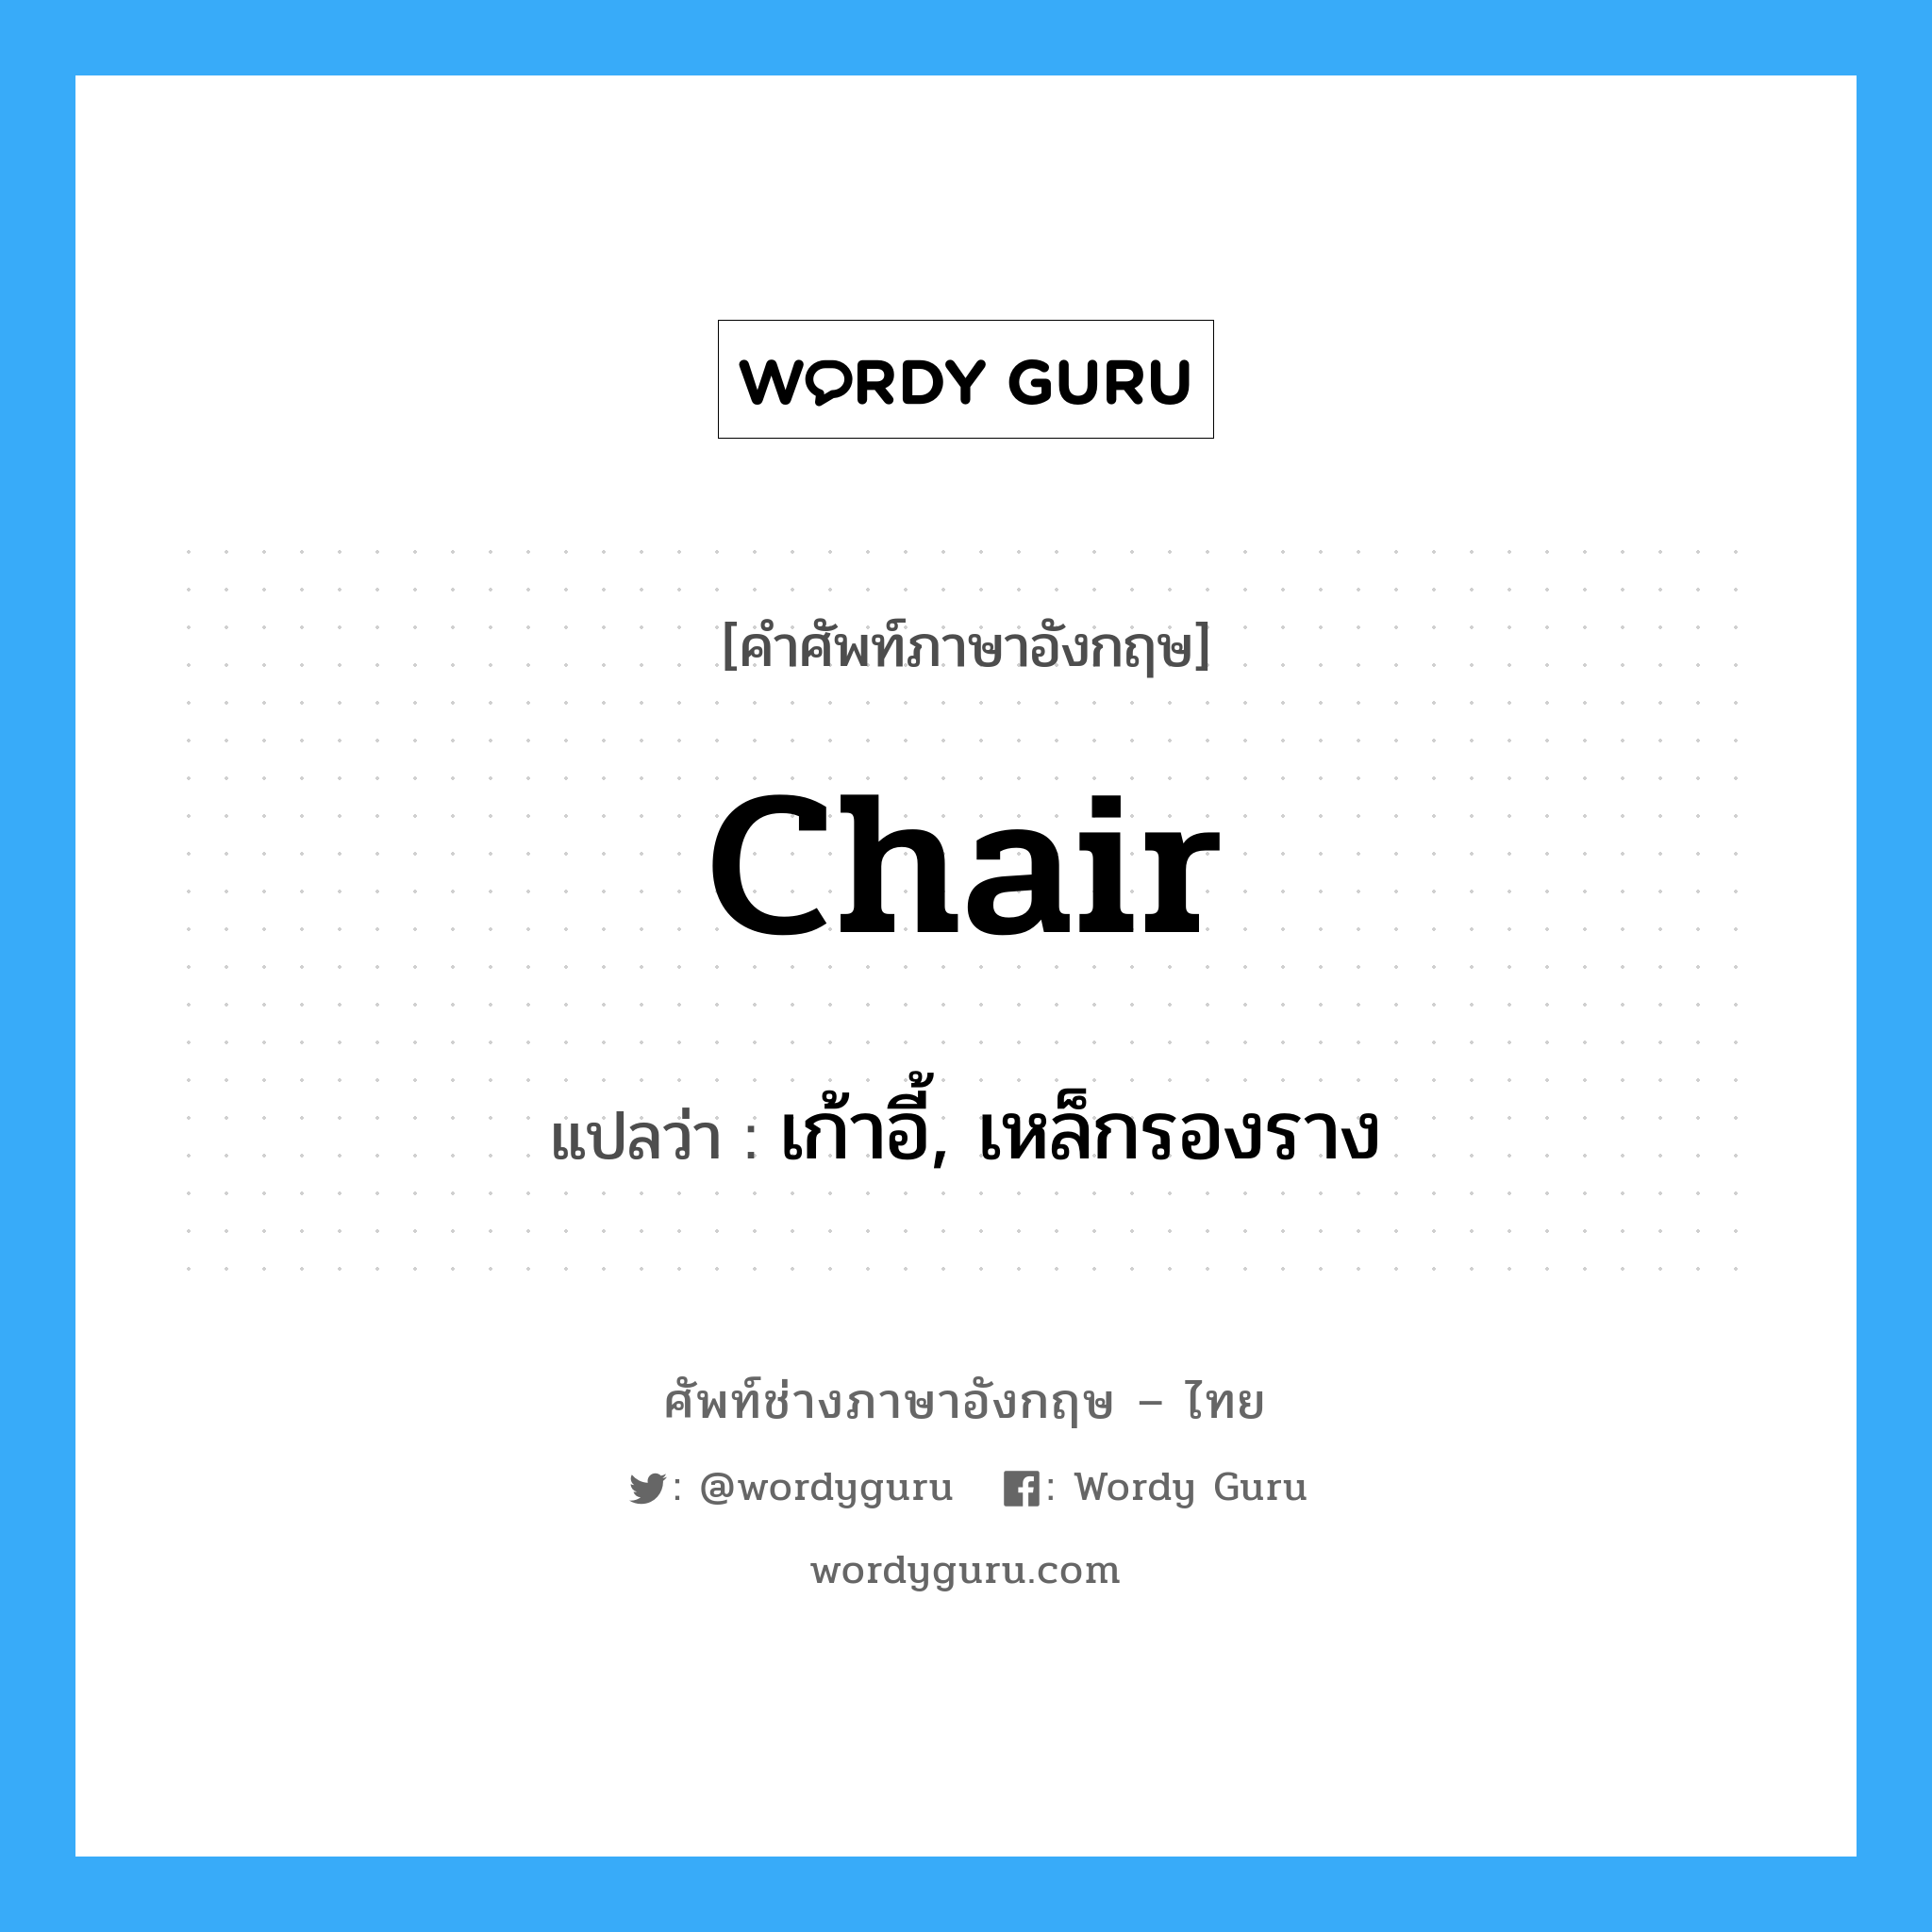 เก้าอี้, เหล็กรองราง ภาษาอังกฤษ?, คำศัพท์ช่างภาษาอังกฤษ - ไทย เก้าอี้, เหล็กรองราง คำศัพท์ภาษาอังกฤษ เก้าอี้, เหล็กรองราง แปลว่า chair